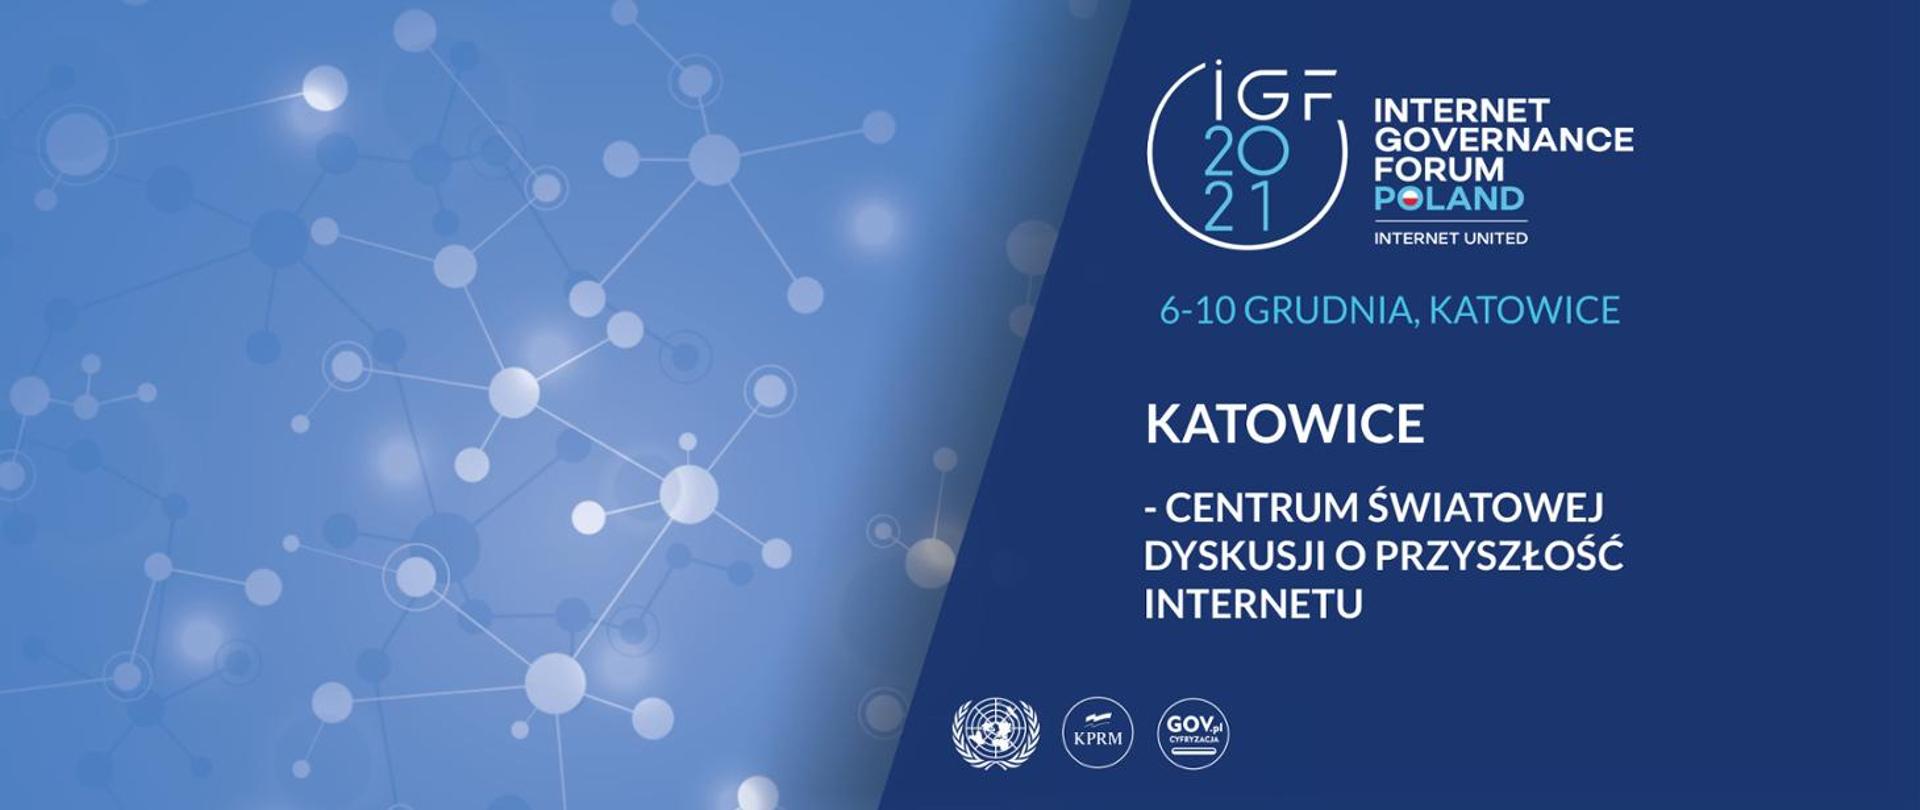 #IGF2021 Katowice